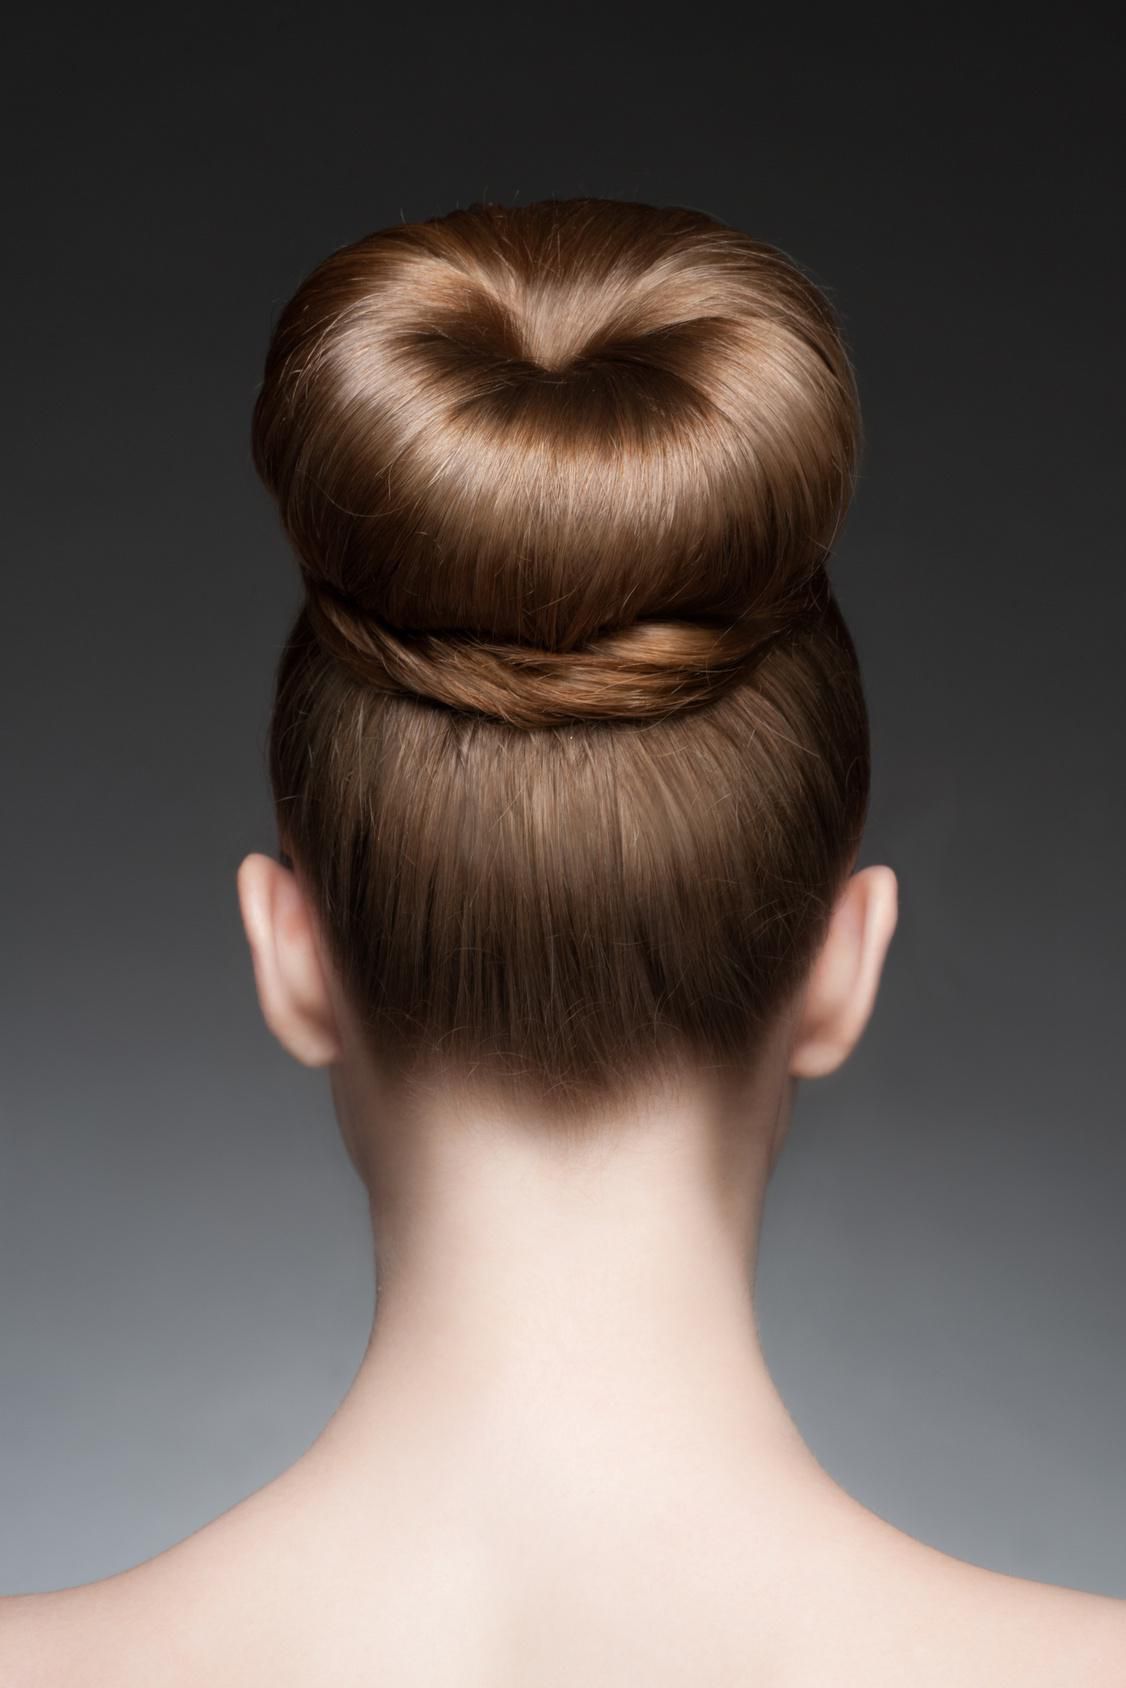 Модна зачіска "бублик": декілька сучасних і простих варіантів. Сьогодні ми вам розповімо як використовувати бублик на короткому, середньому і довгому волоссі.